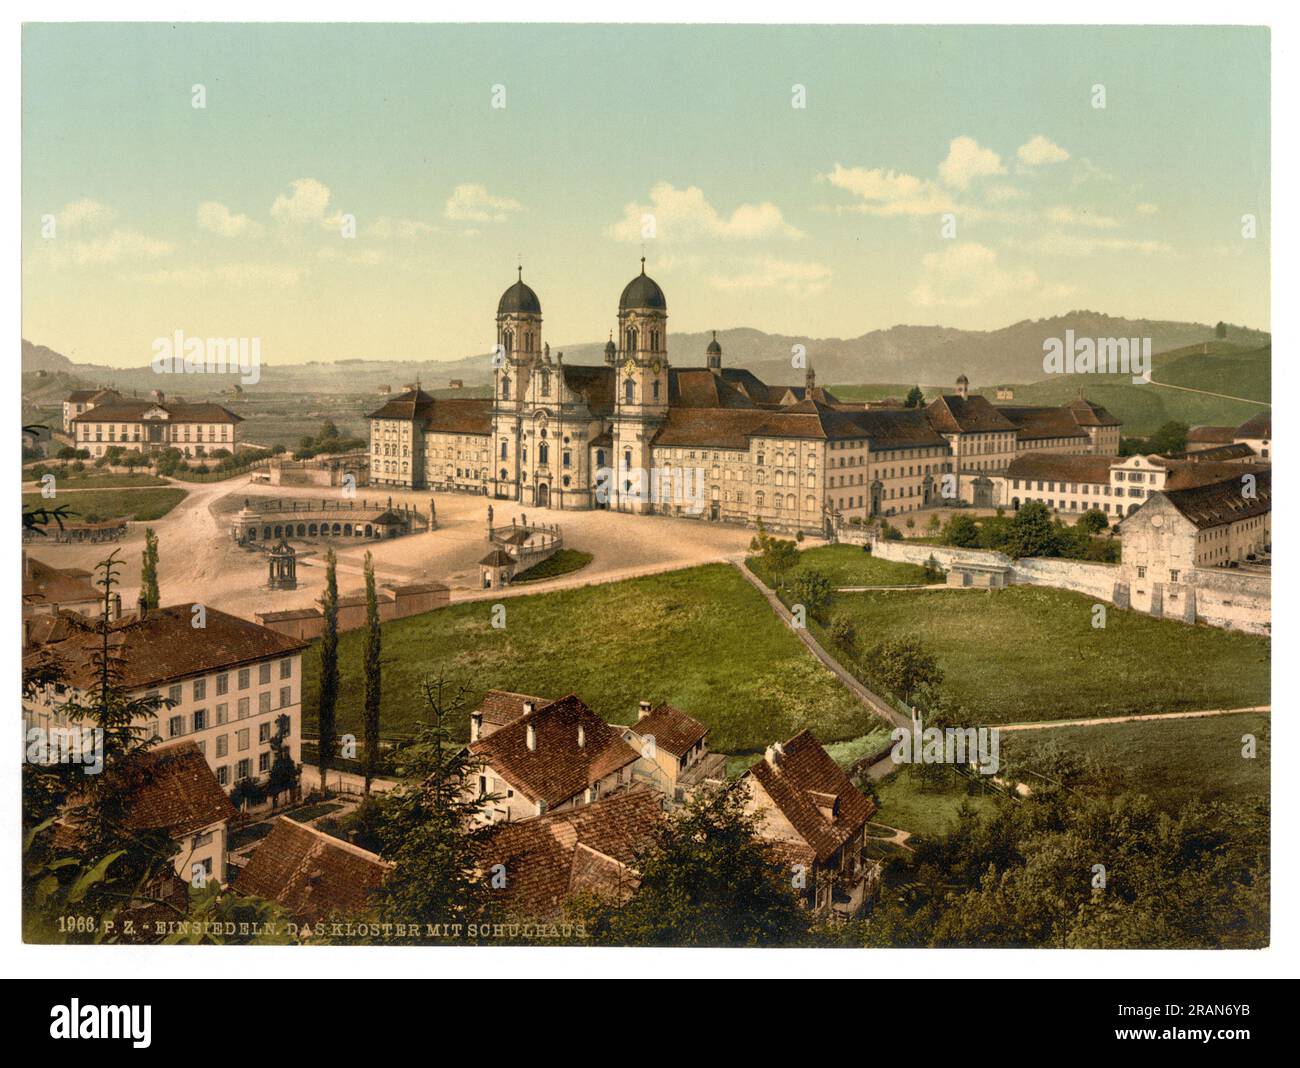 Einsiedeln Abbey and schoolhouse, Einsiedeln, Schwyz, Switzerland 1890. Stock Photo